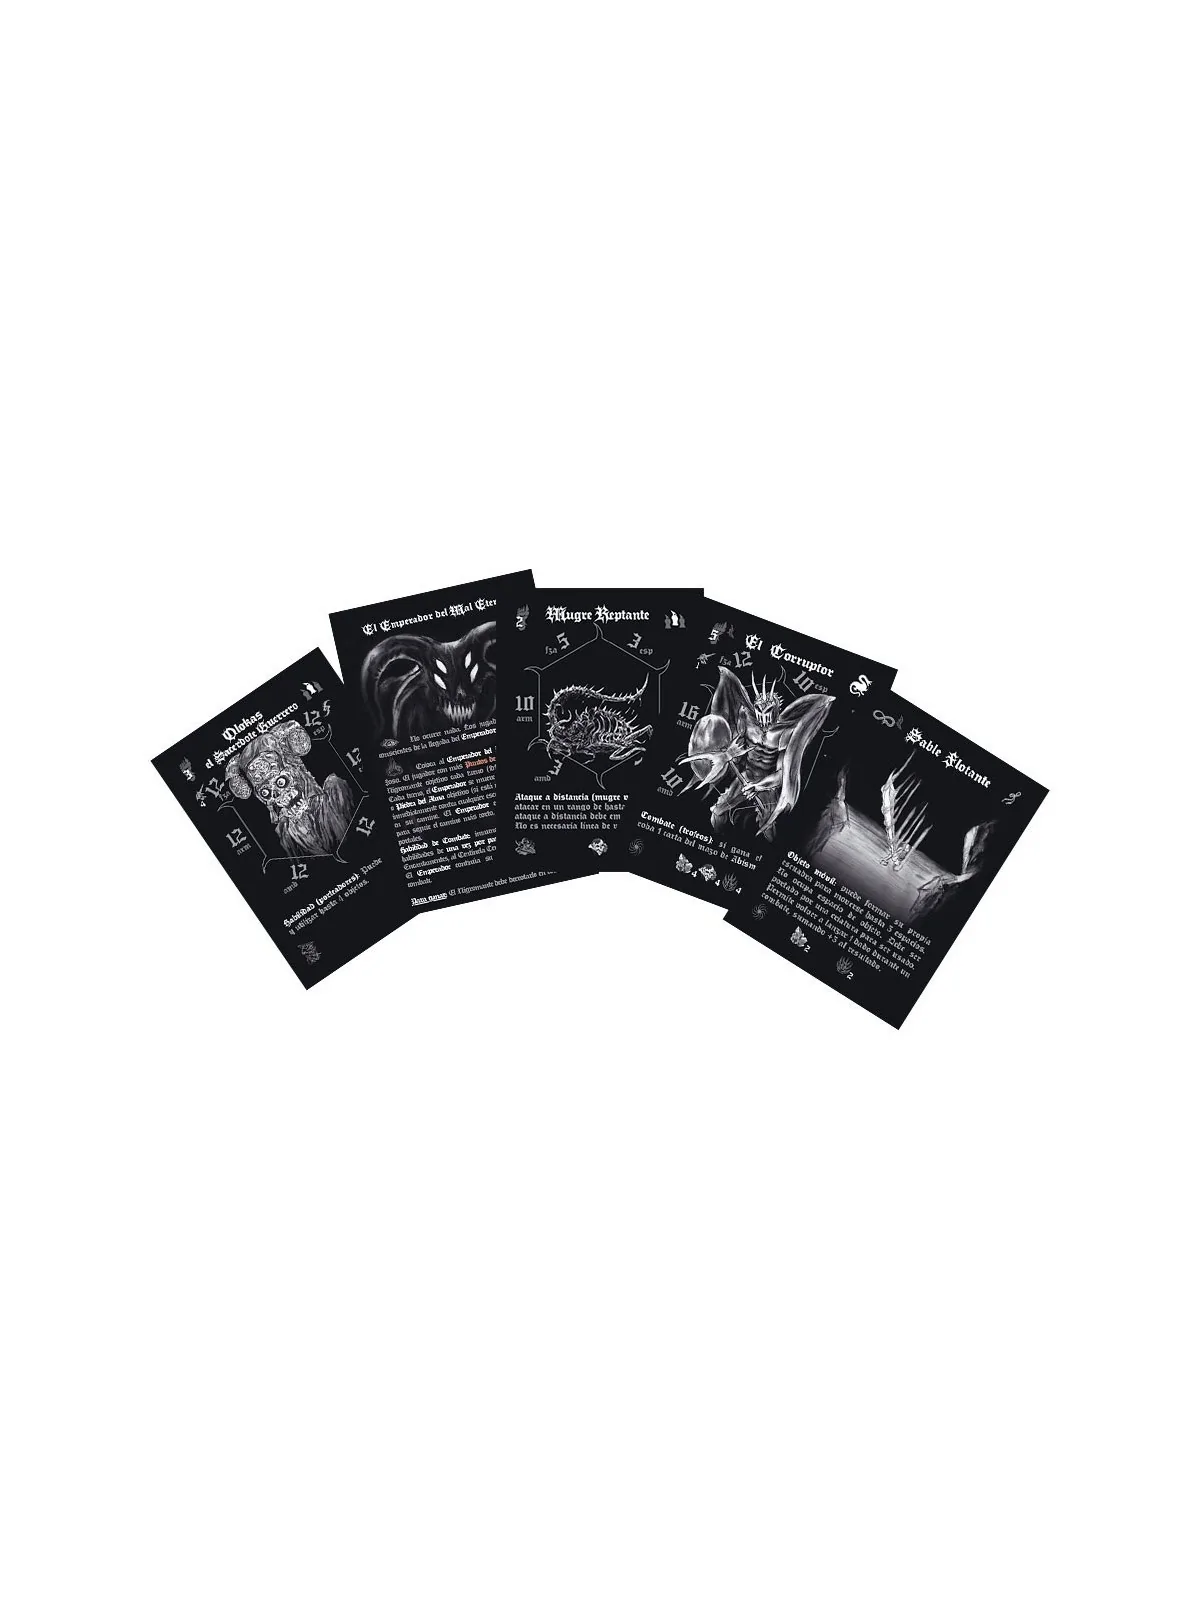 Comprar Cave Evil sPain Edition barato al mejor precio 79,99 € de MasQ